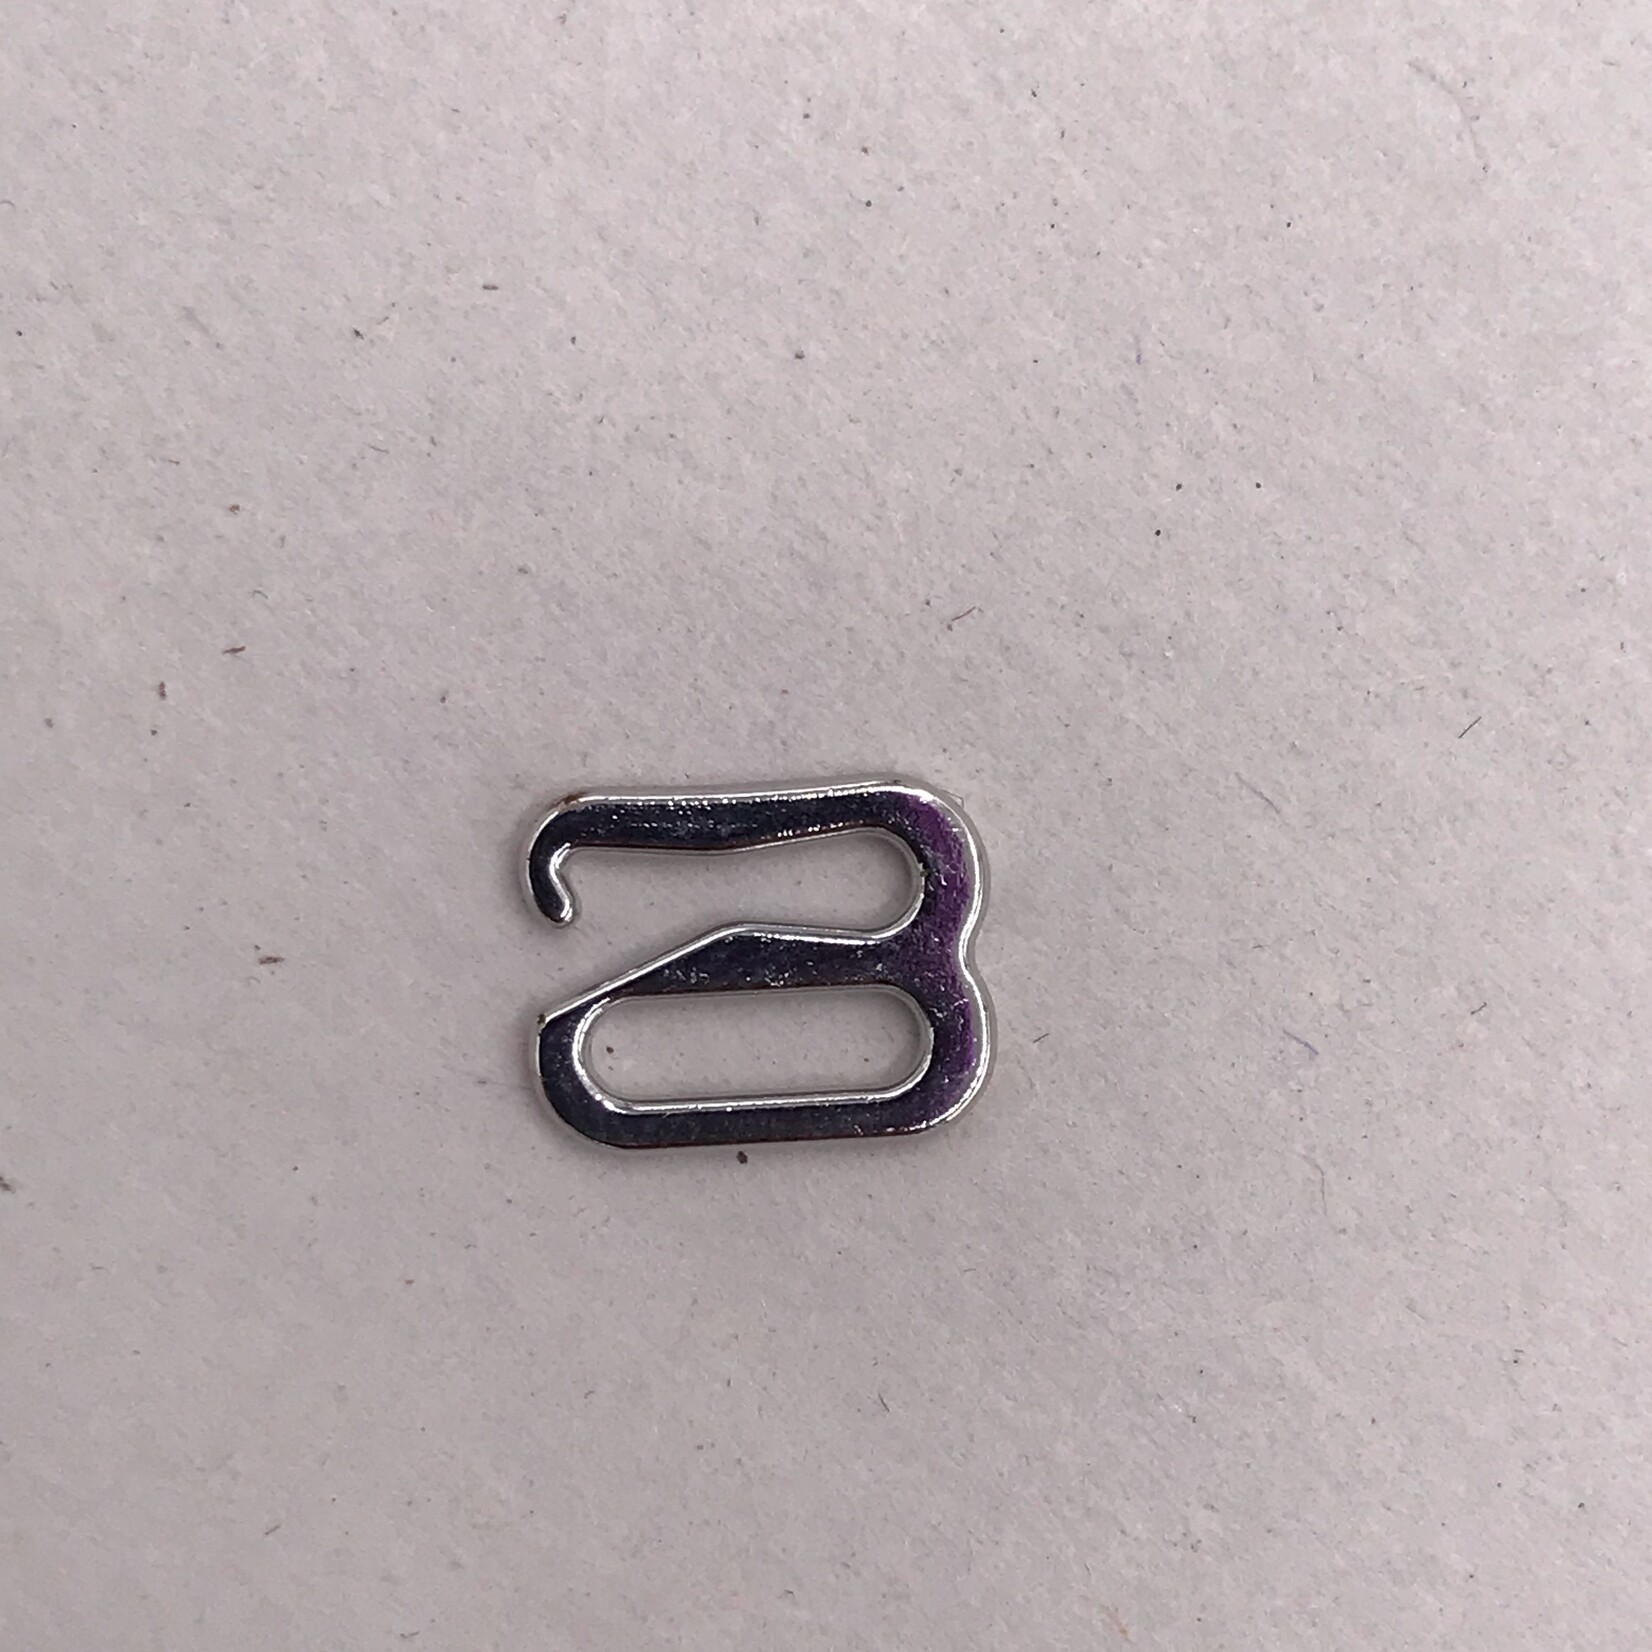 100Pcs Metal Bra Strap Adjuster Slider O Ring Lingerie Supplies Sewing  Craft DIY Size: 12mm, Color: Black